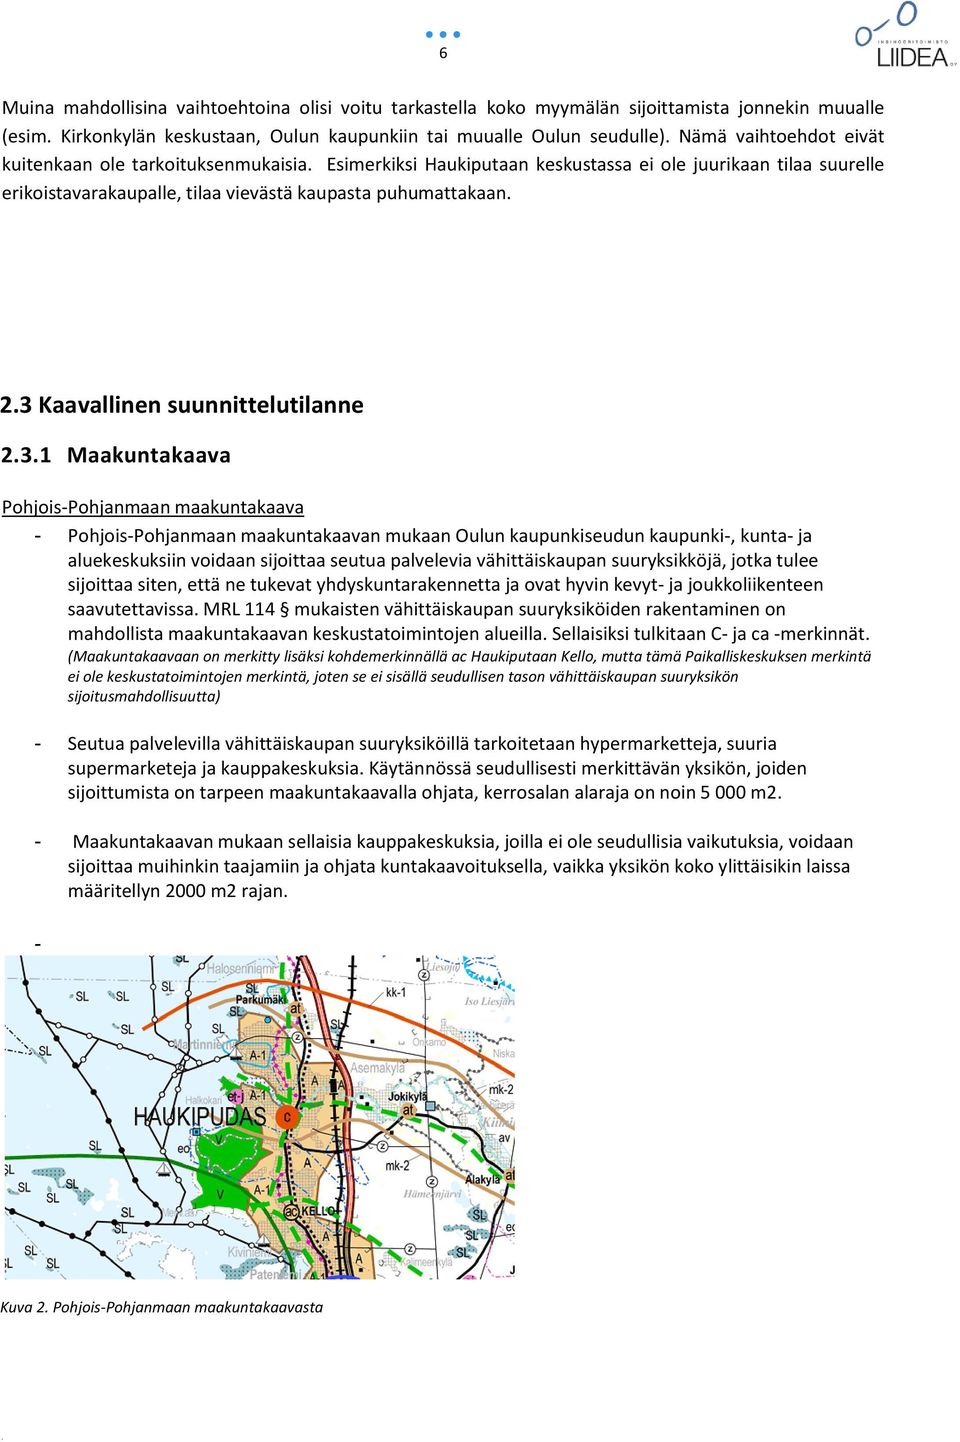 3 Kaavallinen suunnittelutilanne 2.3.1 Maakuntakaava Pohjois-Pohjanmaan maakuntakaava - Pohjois-Pohjanmaan maakuntakaavan mukaan Oulun kaupunkiseudun kaupunki-, kunta- ja aluekeskuksiin voidaan